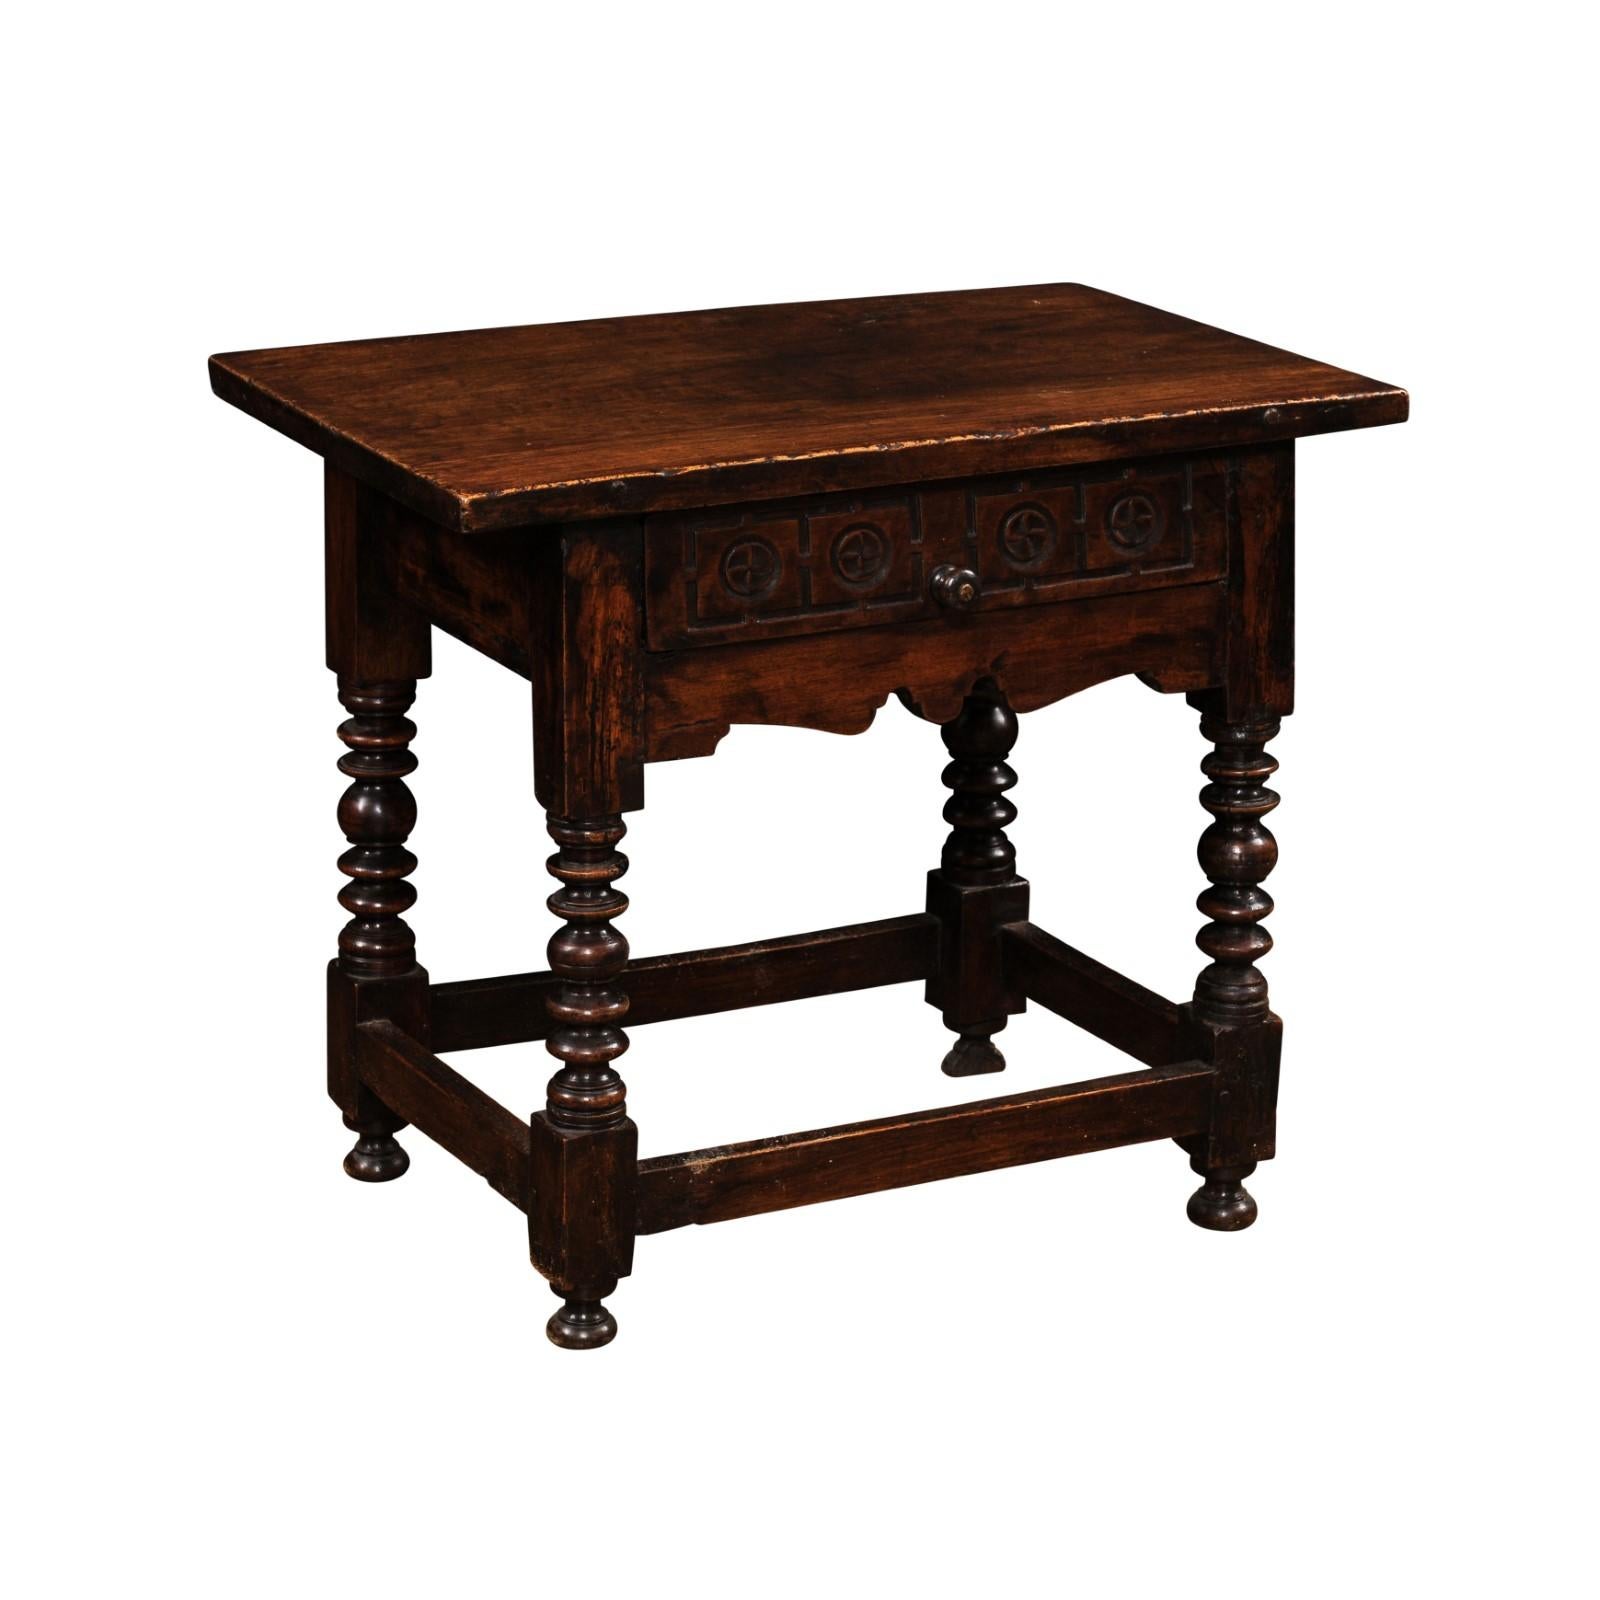 Table d'appoint espagnole vers 1770 avec un seul tiroir à queue d'aronde et des rosettes sculptées. Cette table d'appoint espagnole, datant d'environ 1770, est un remarquable meuble ancien qui allie utilité et charme historique. Fabriquée avec une